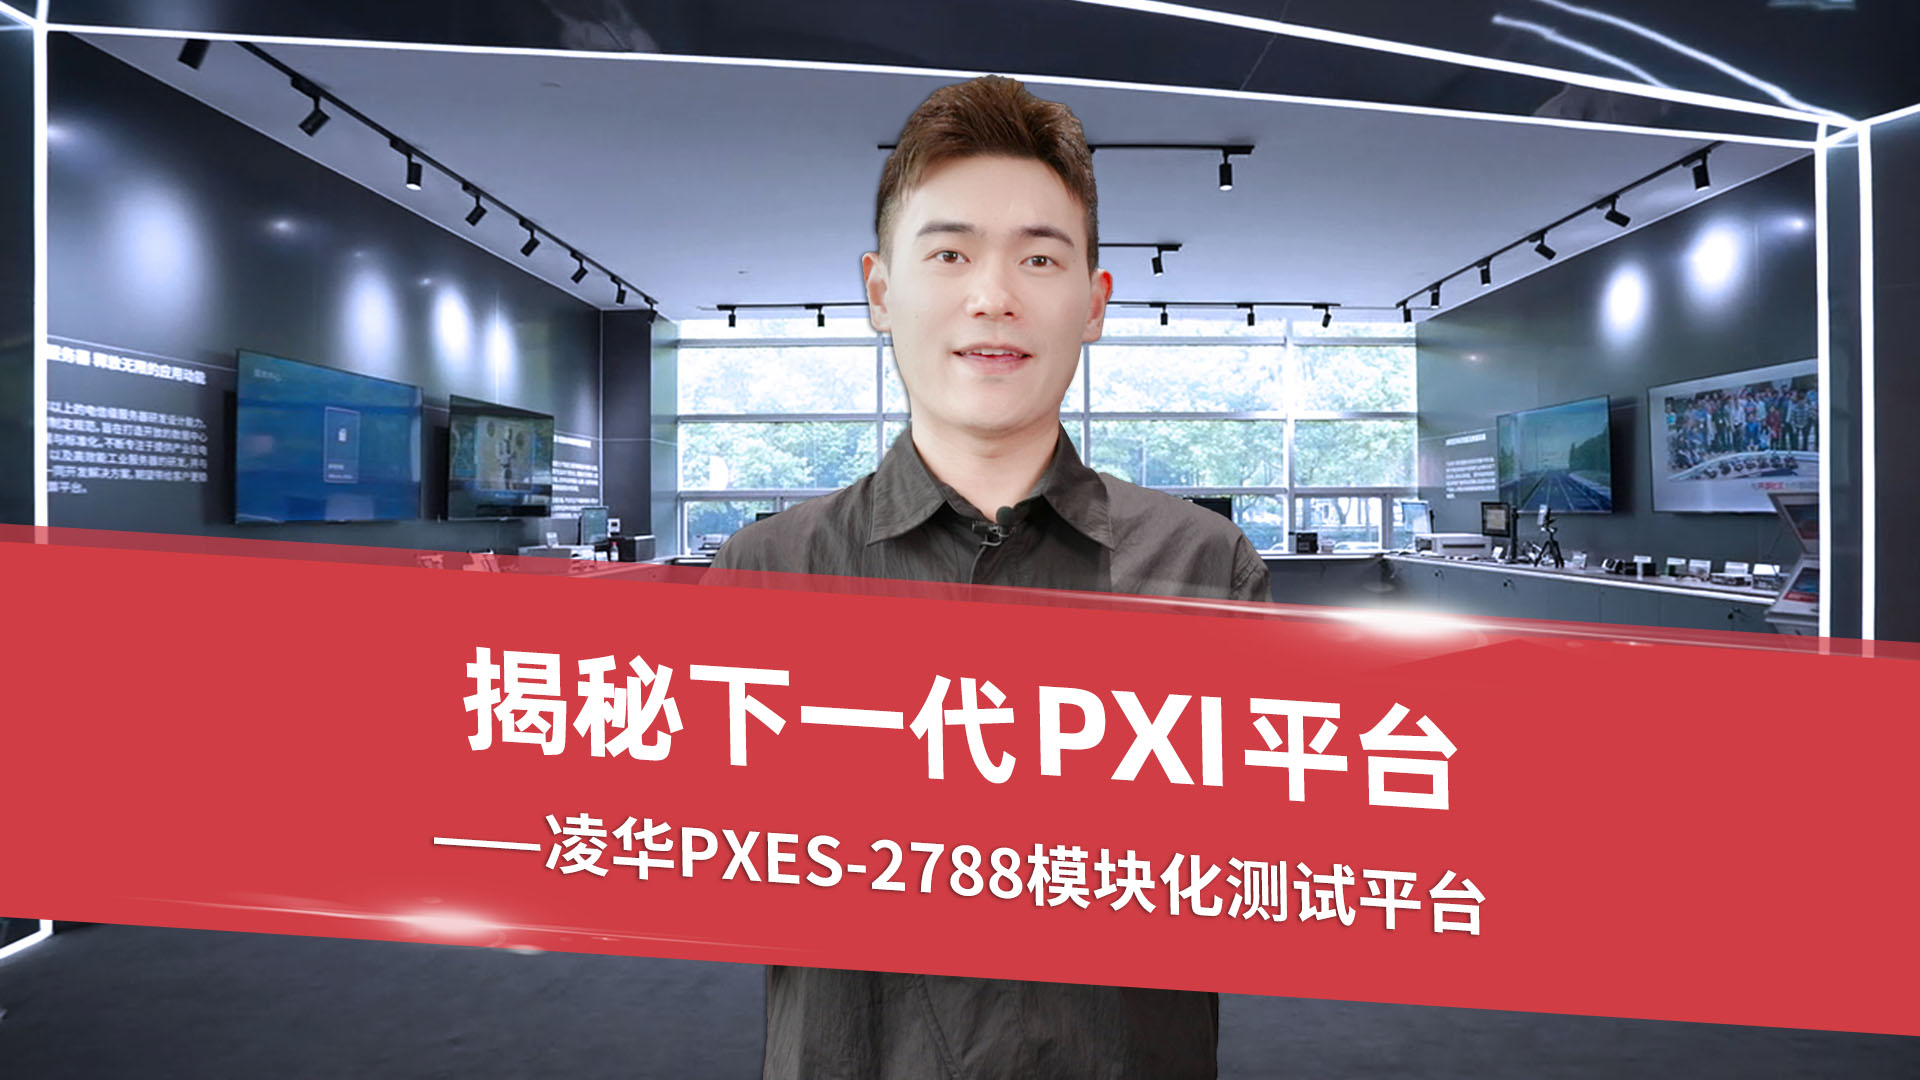 揭秘下一代PXI平台--凌华PXES-2788模块化测试平台